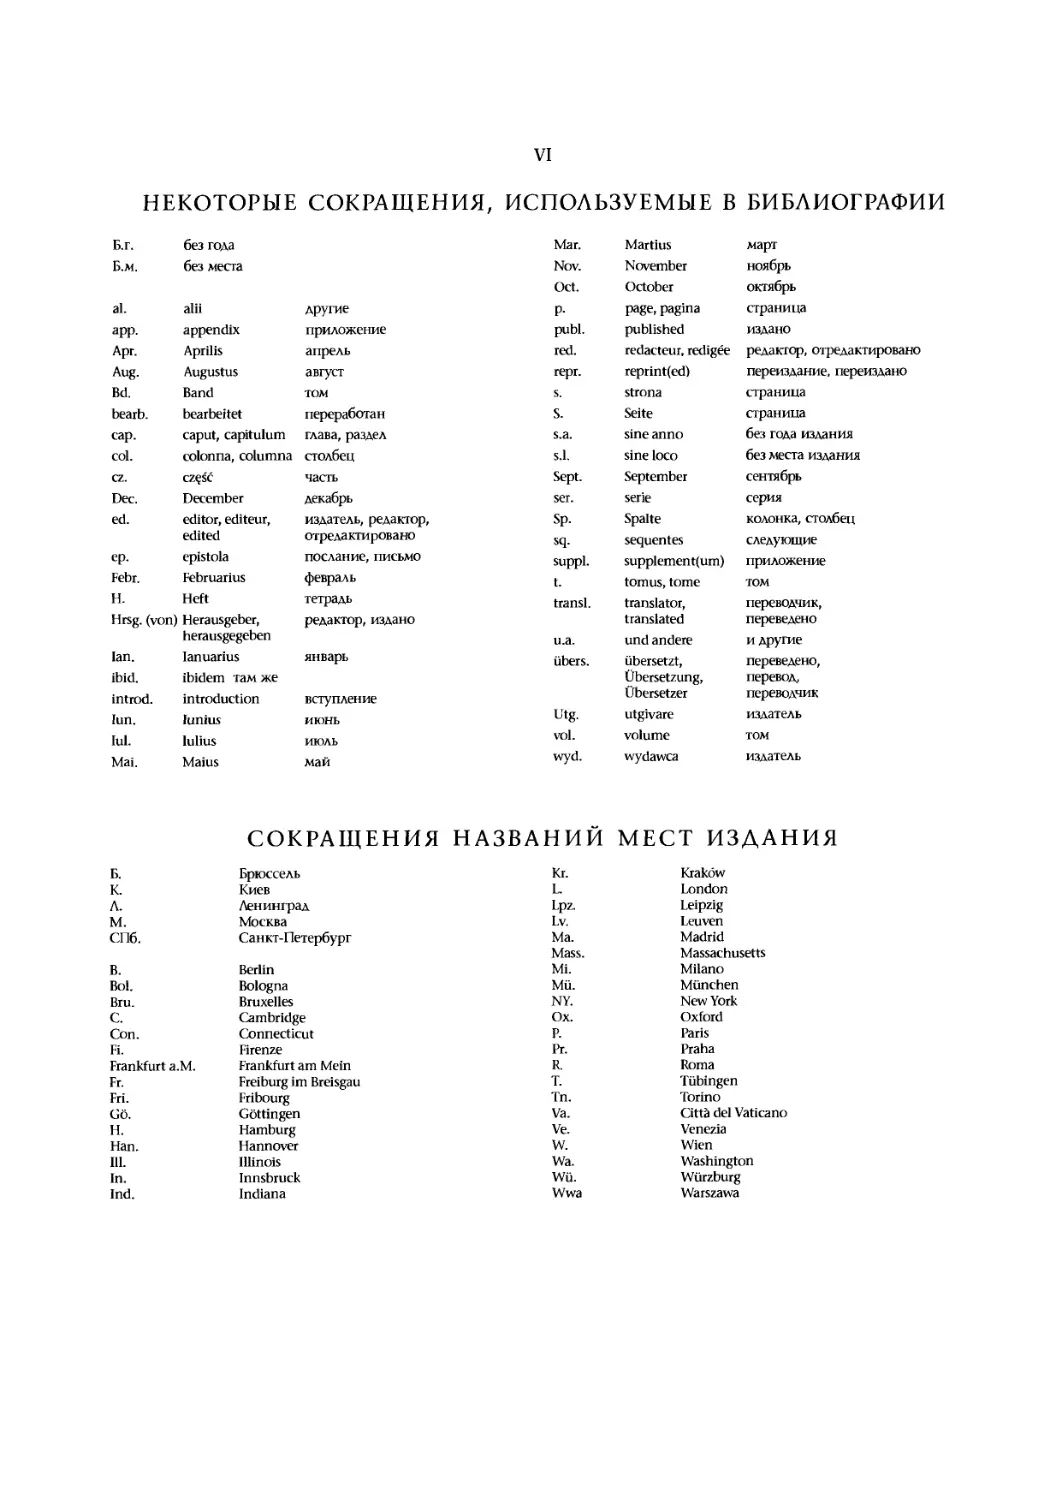 Некоторые сокращения, используемые в библиографии
Сокращения названий мест издания